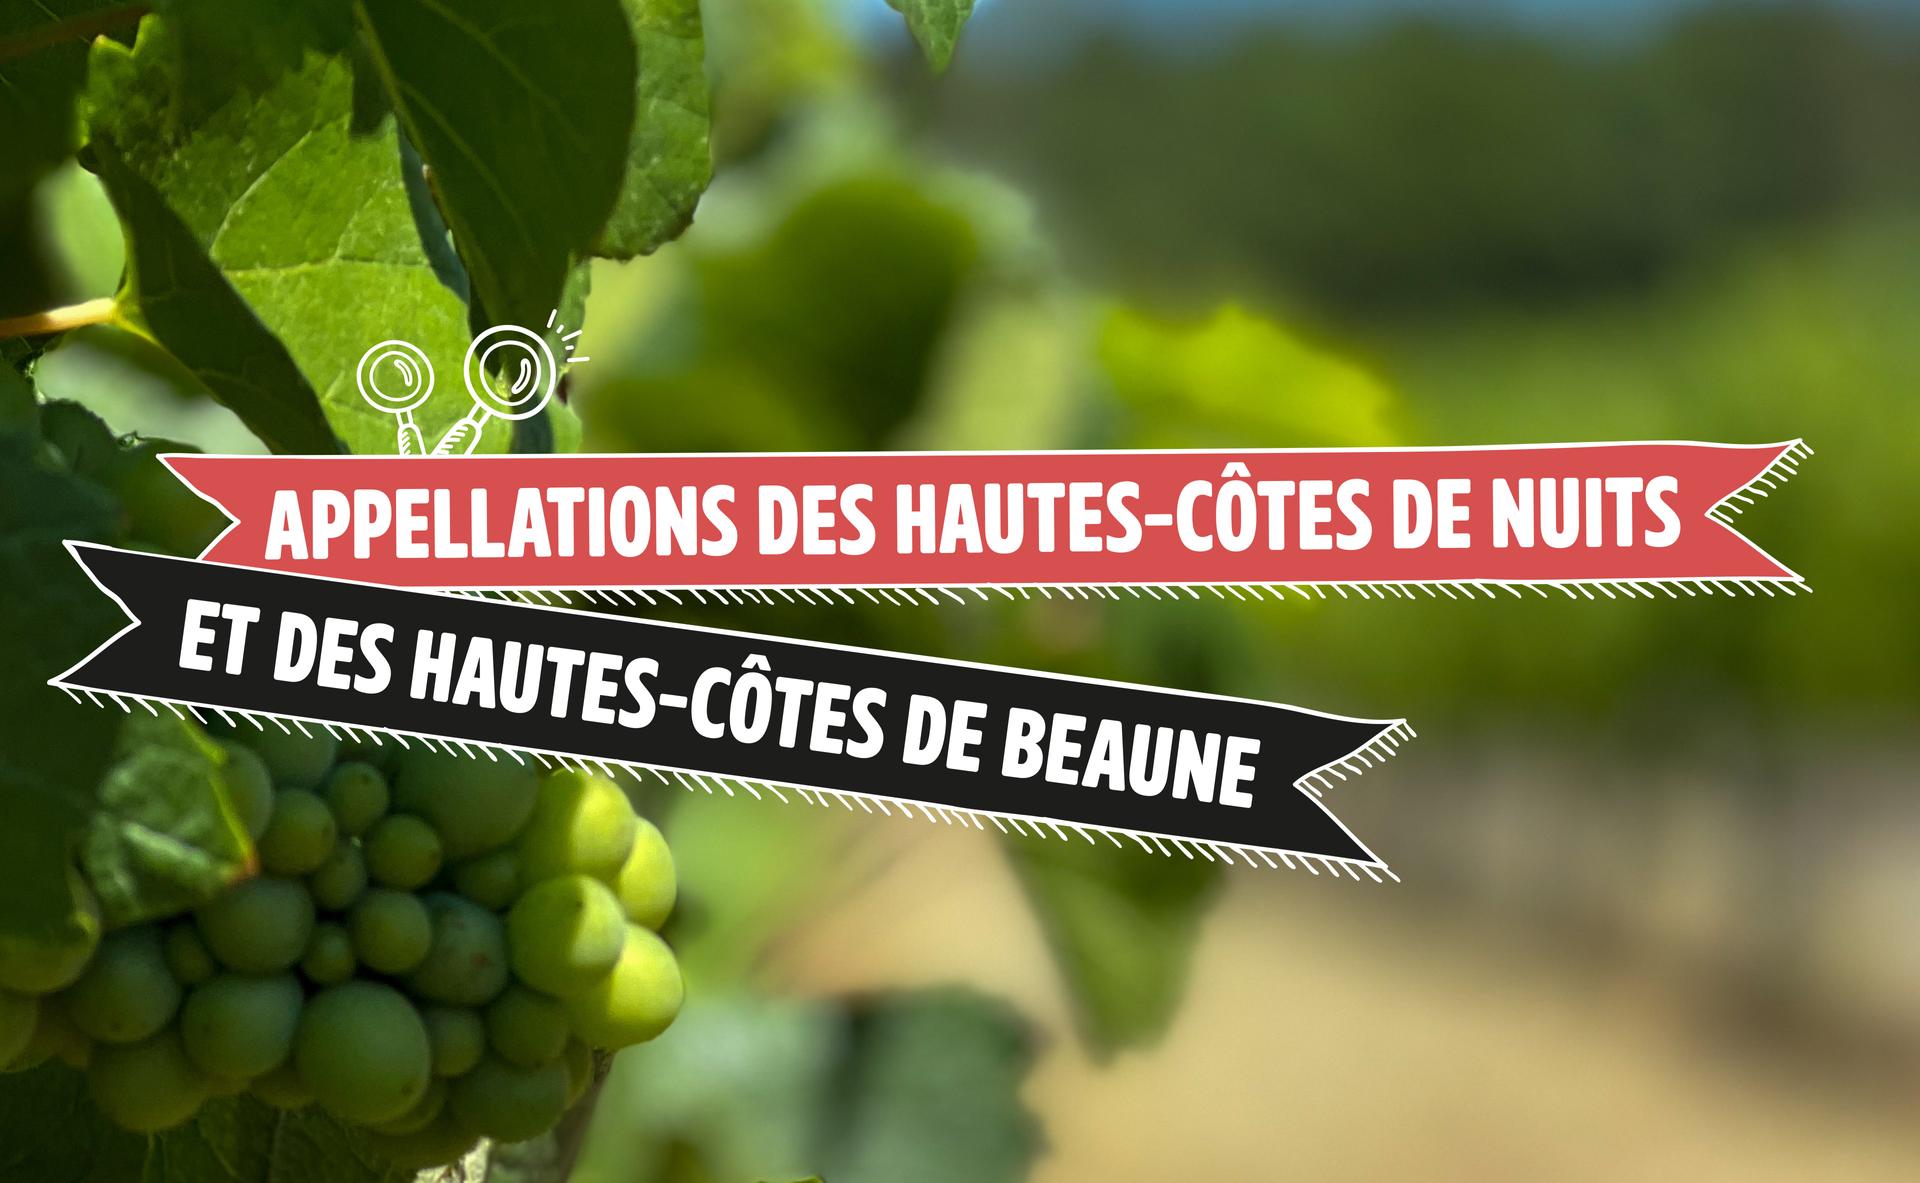 Appellations des Hautes-Côtes de Nuits et des Hautes-Côtes de Beaune : panorama sur deux appellations de la Bourgogne régionale